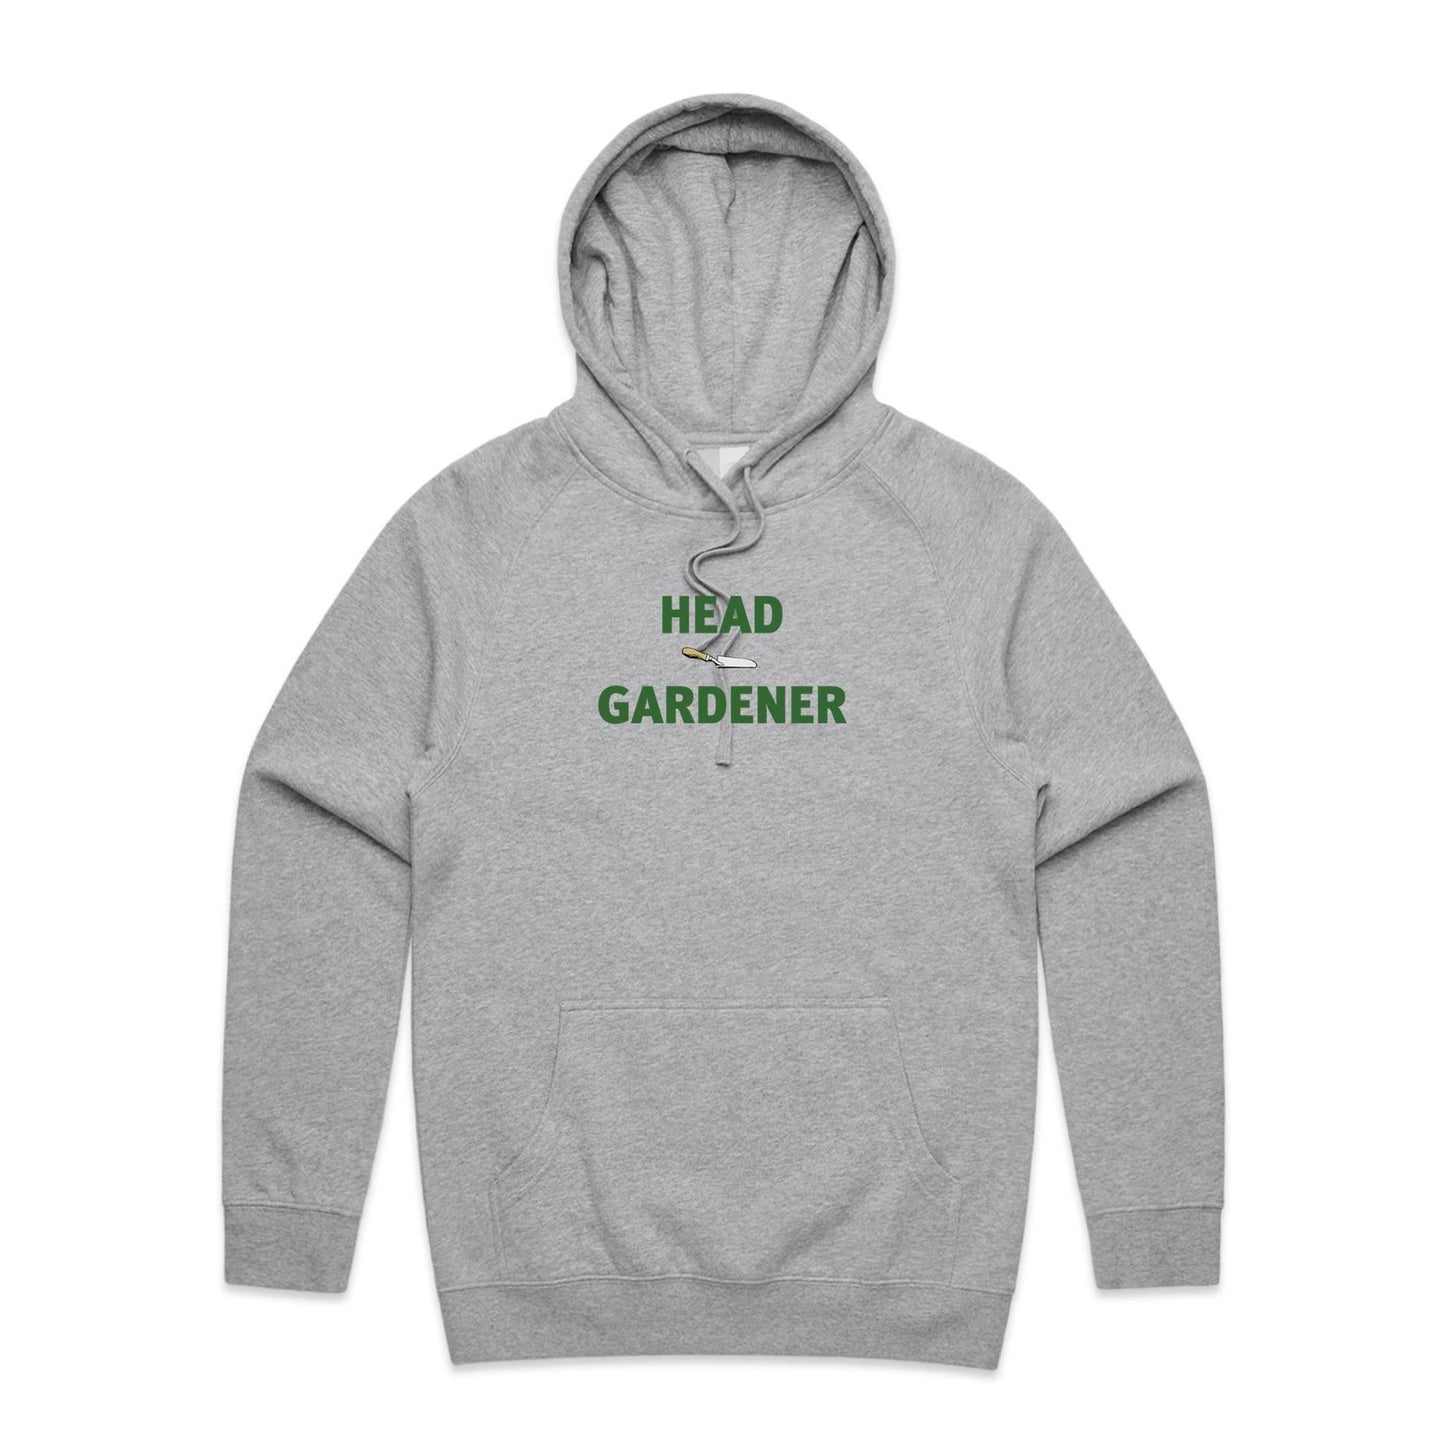 Head Gardener Hoodies for Men (Unisex)